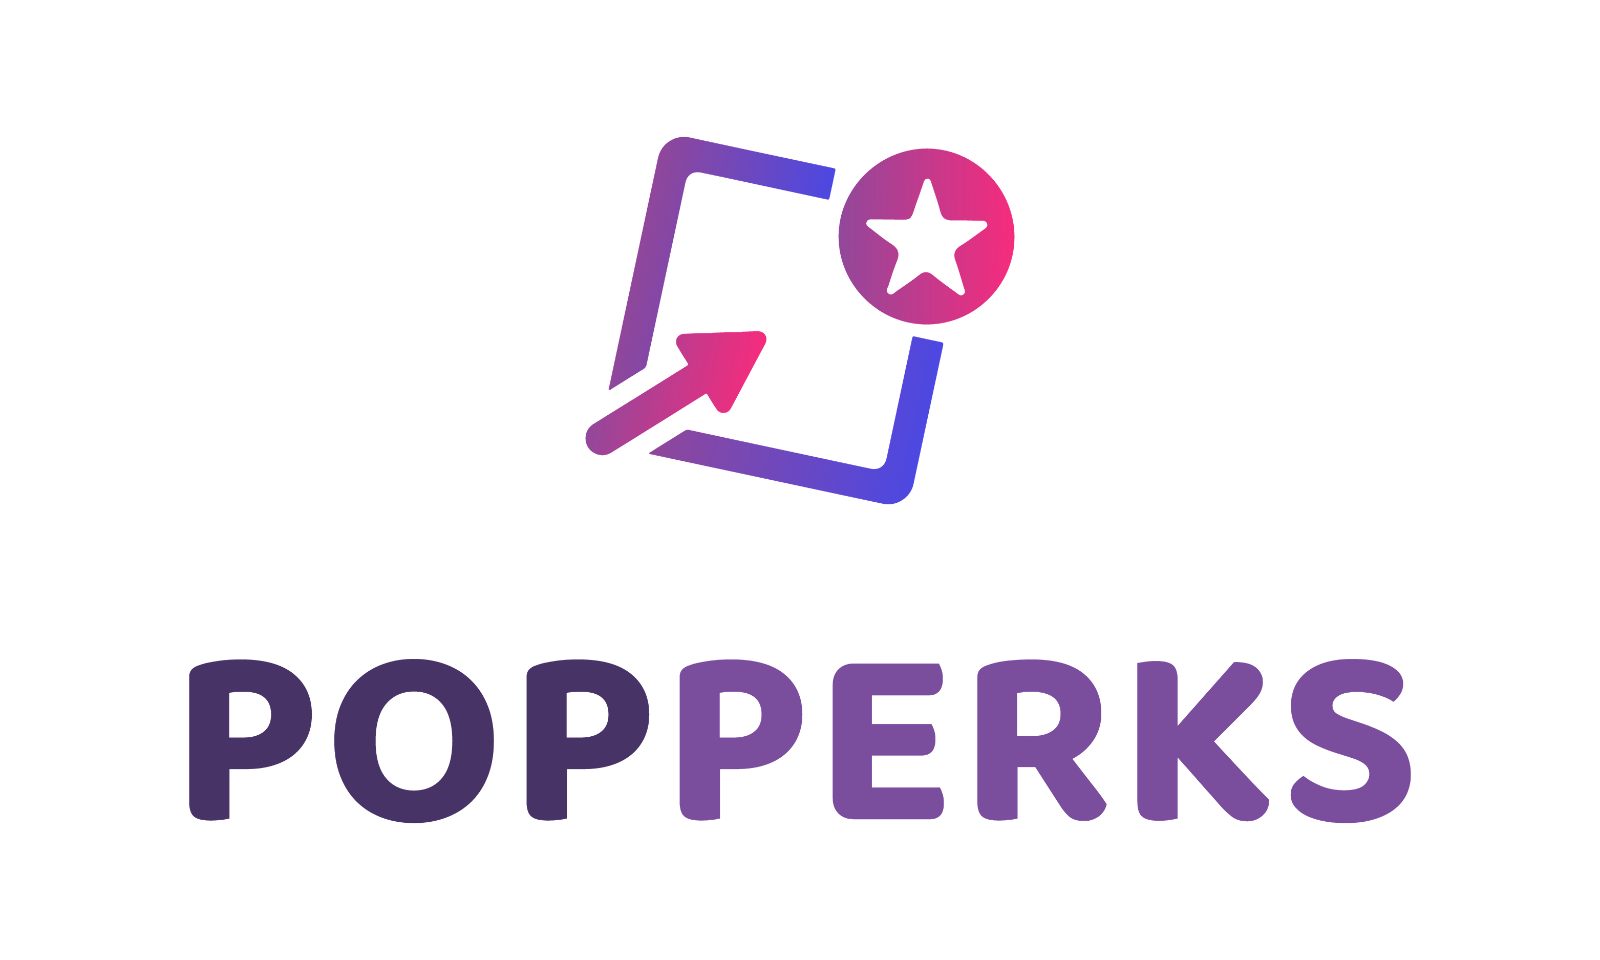 PopPerks.com - Creative brandable domain for sale